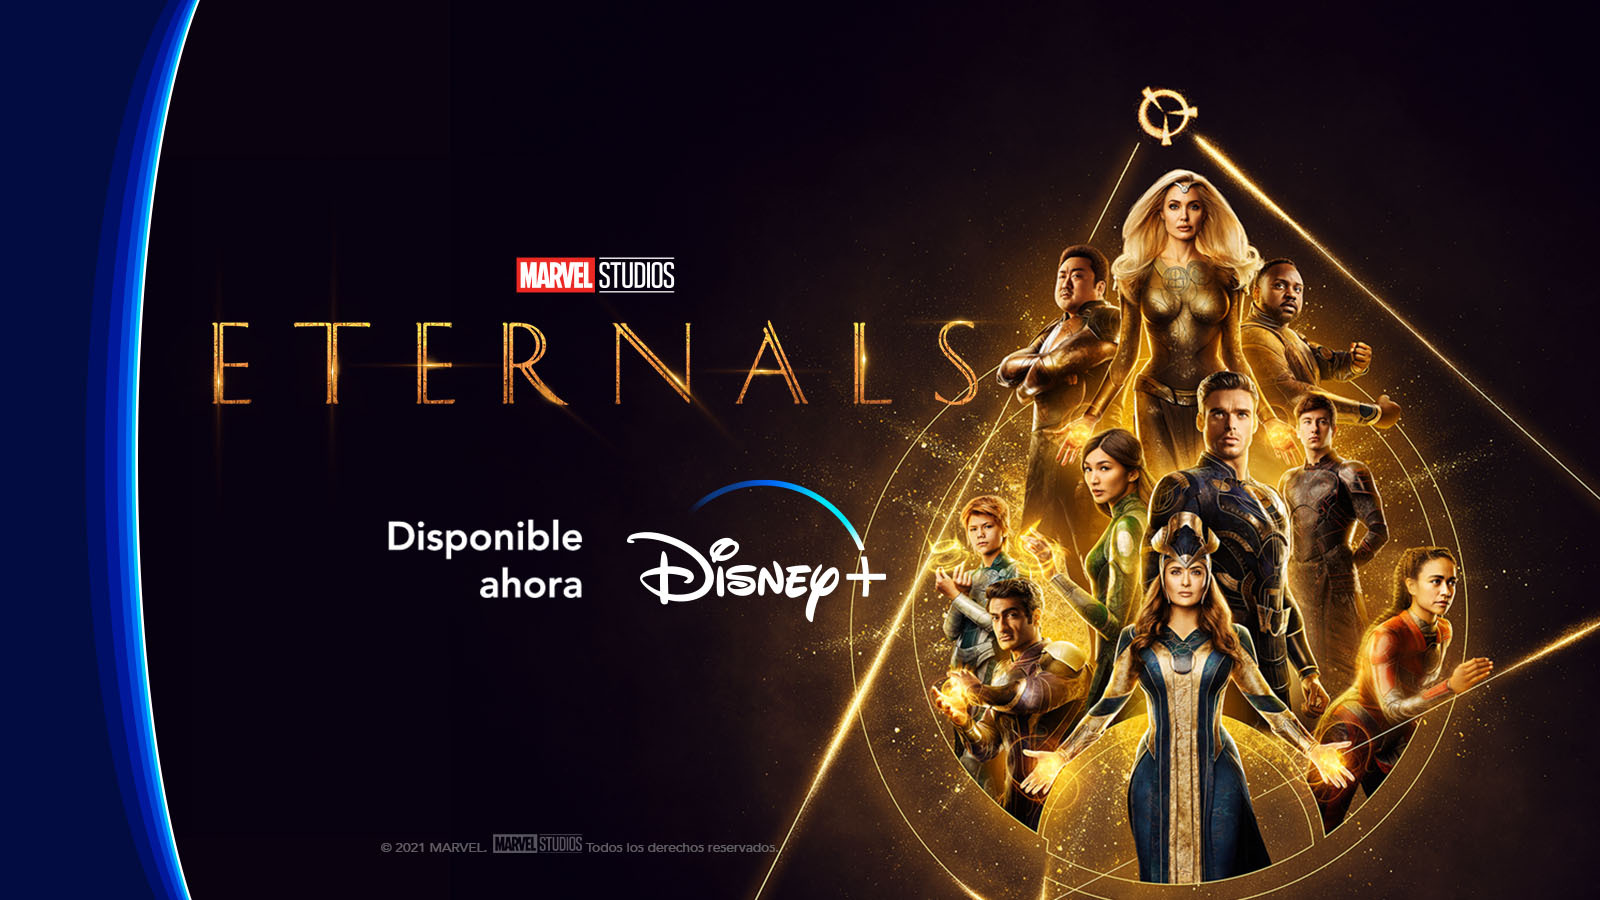 Eternals disponible ahora en Disney+